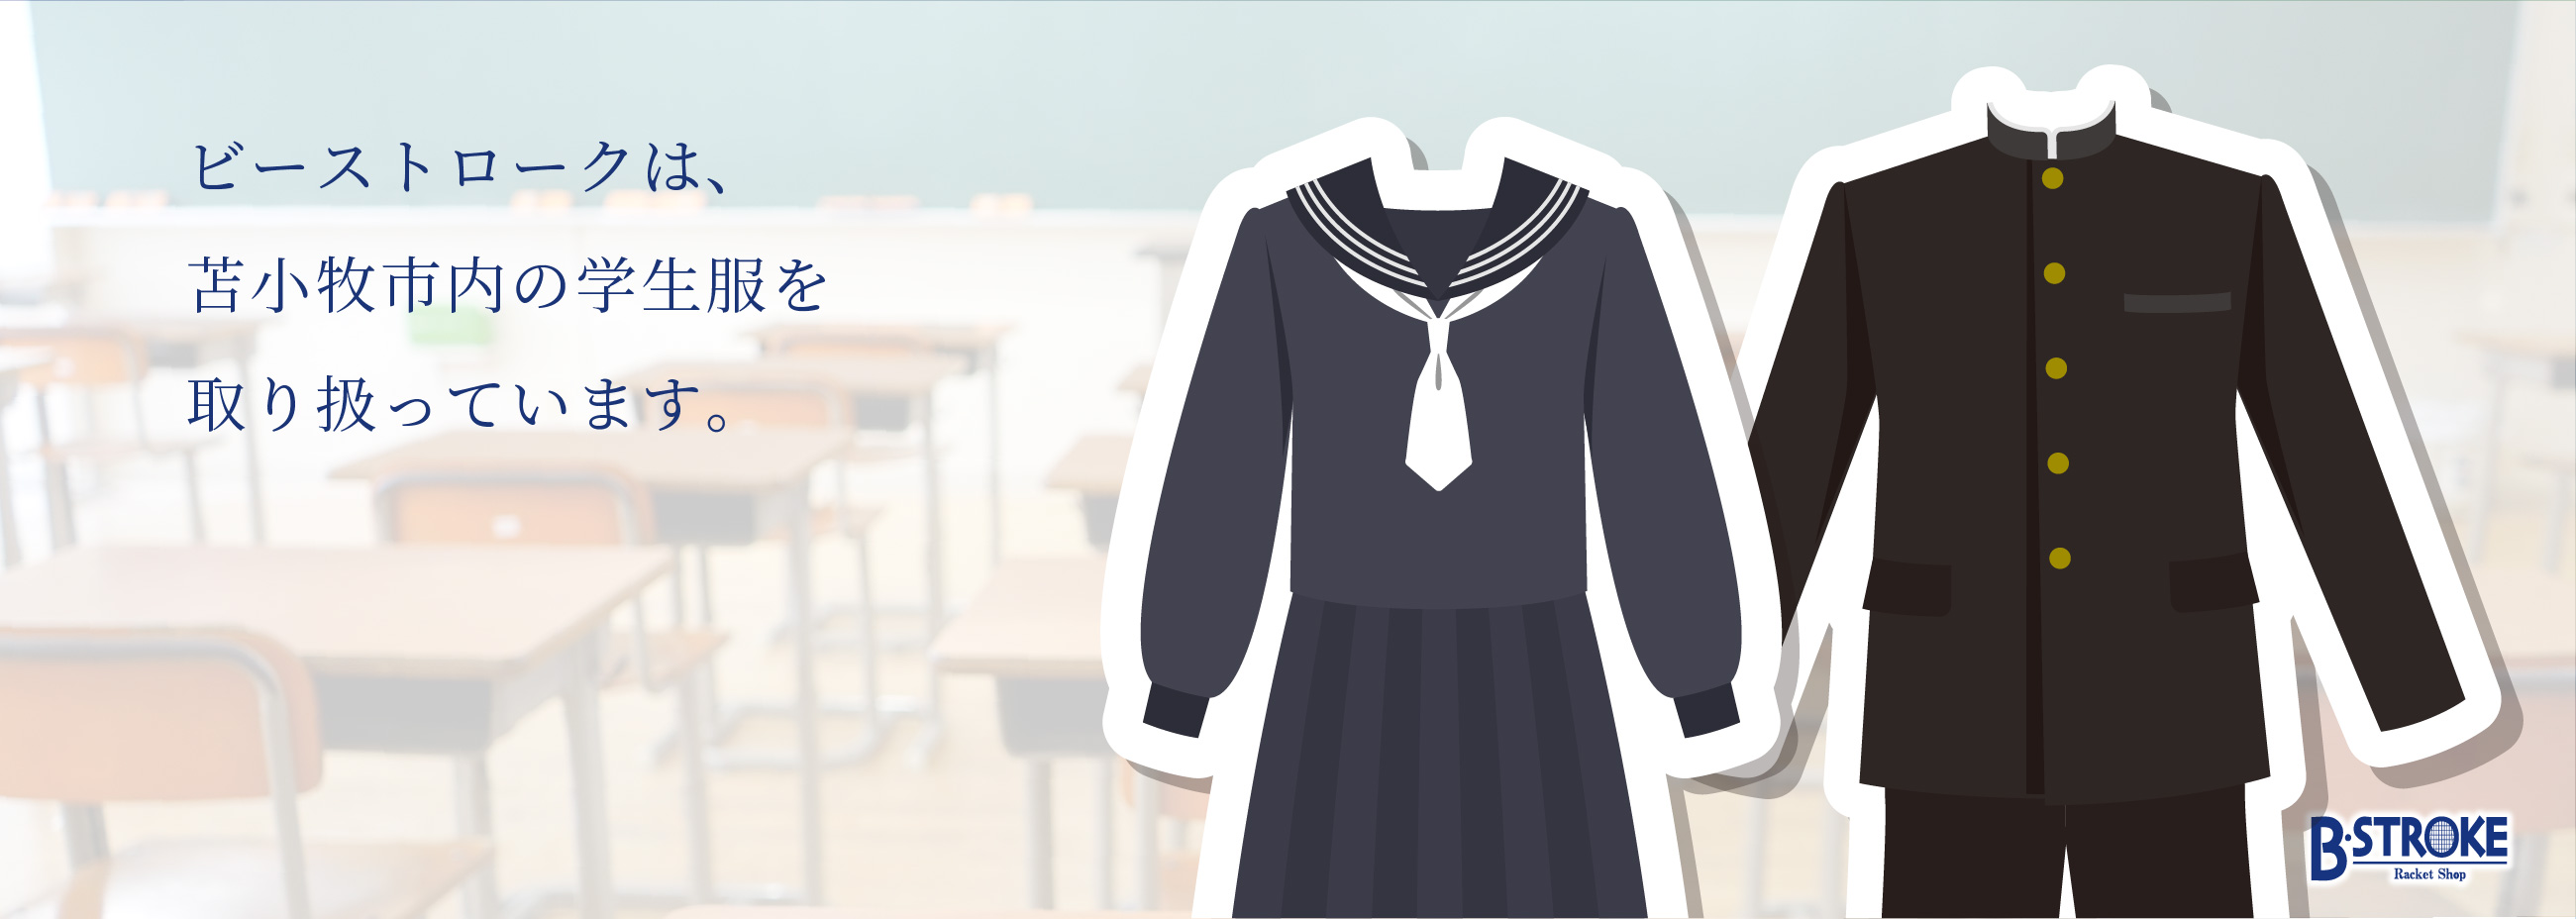 ビーストロークは、苫小牧市内の学生服を取り扱っています。